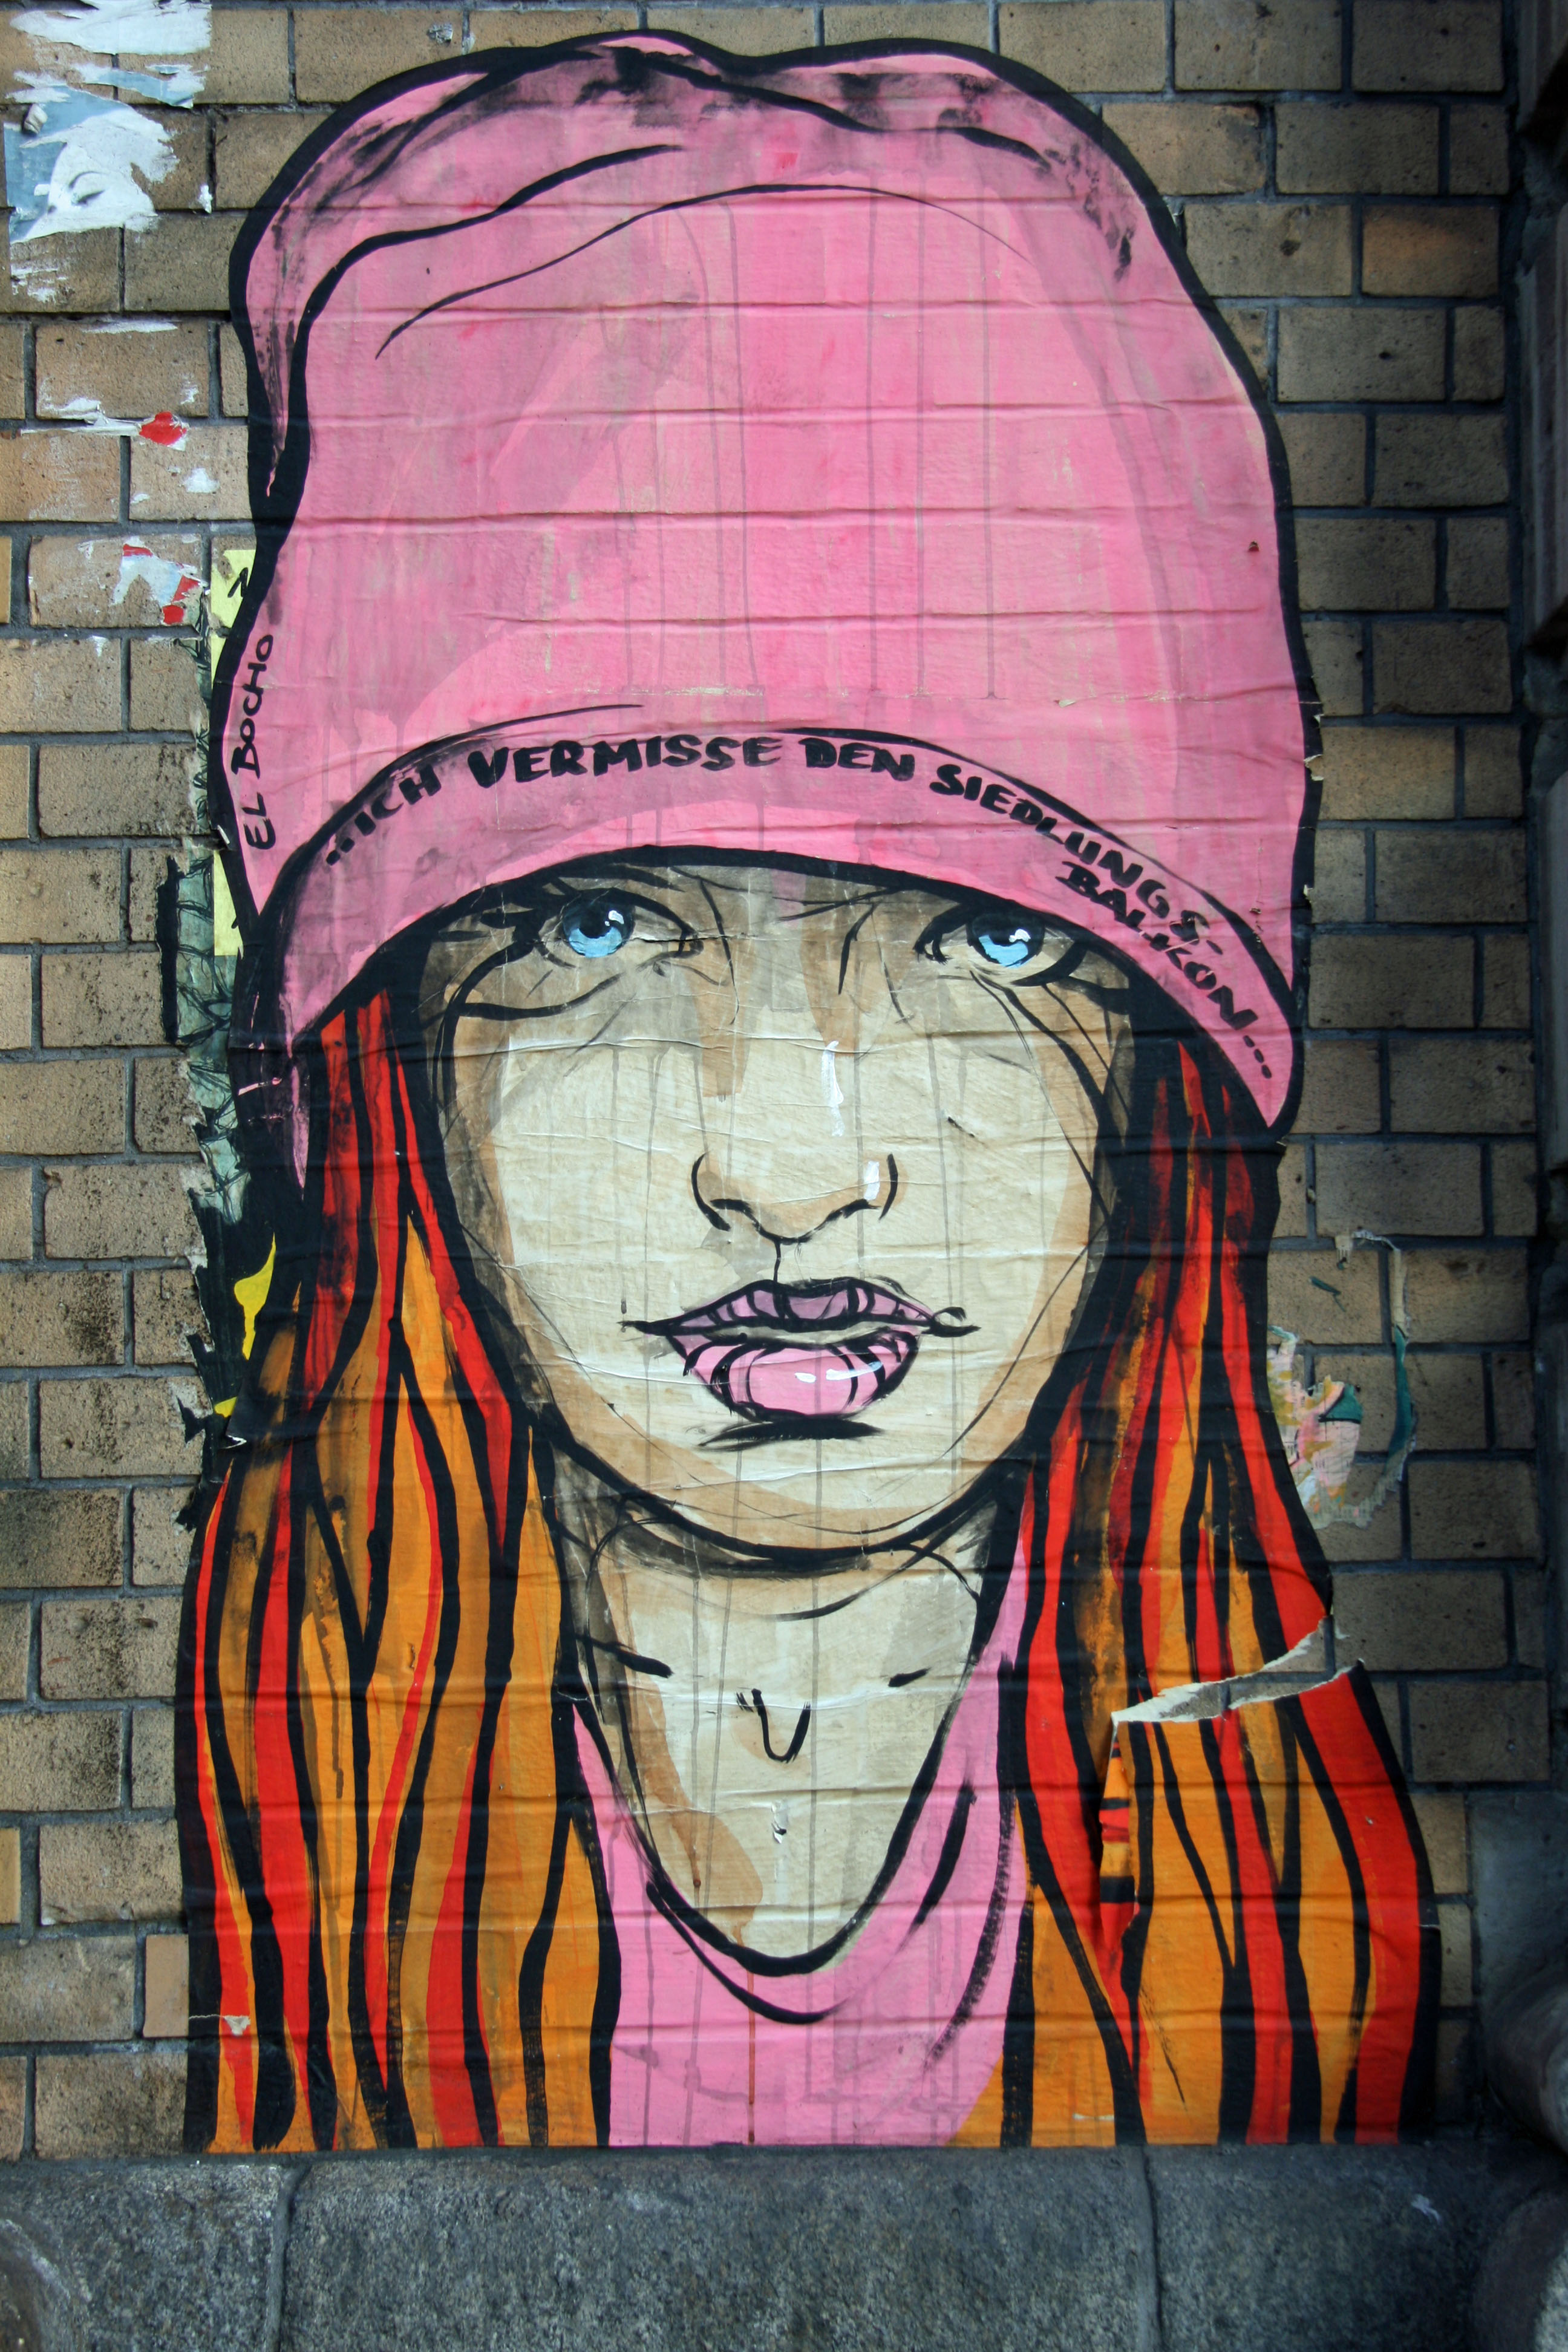 Ich Vermisse Den Siedlungsbalkon: Street Art by El Bocho in Berlin